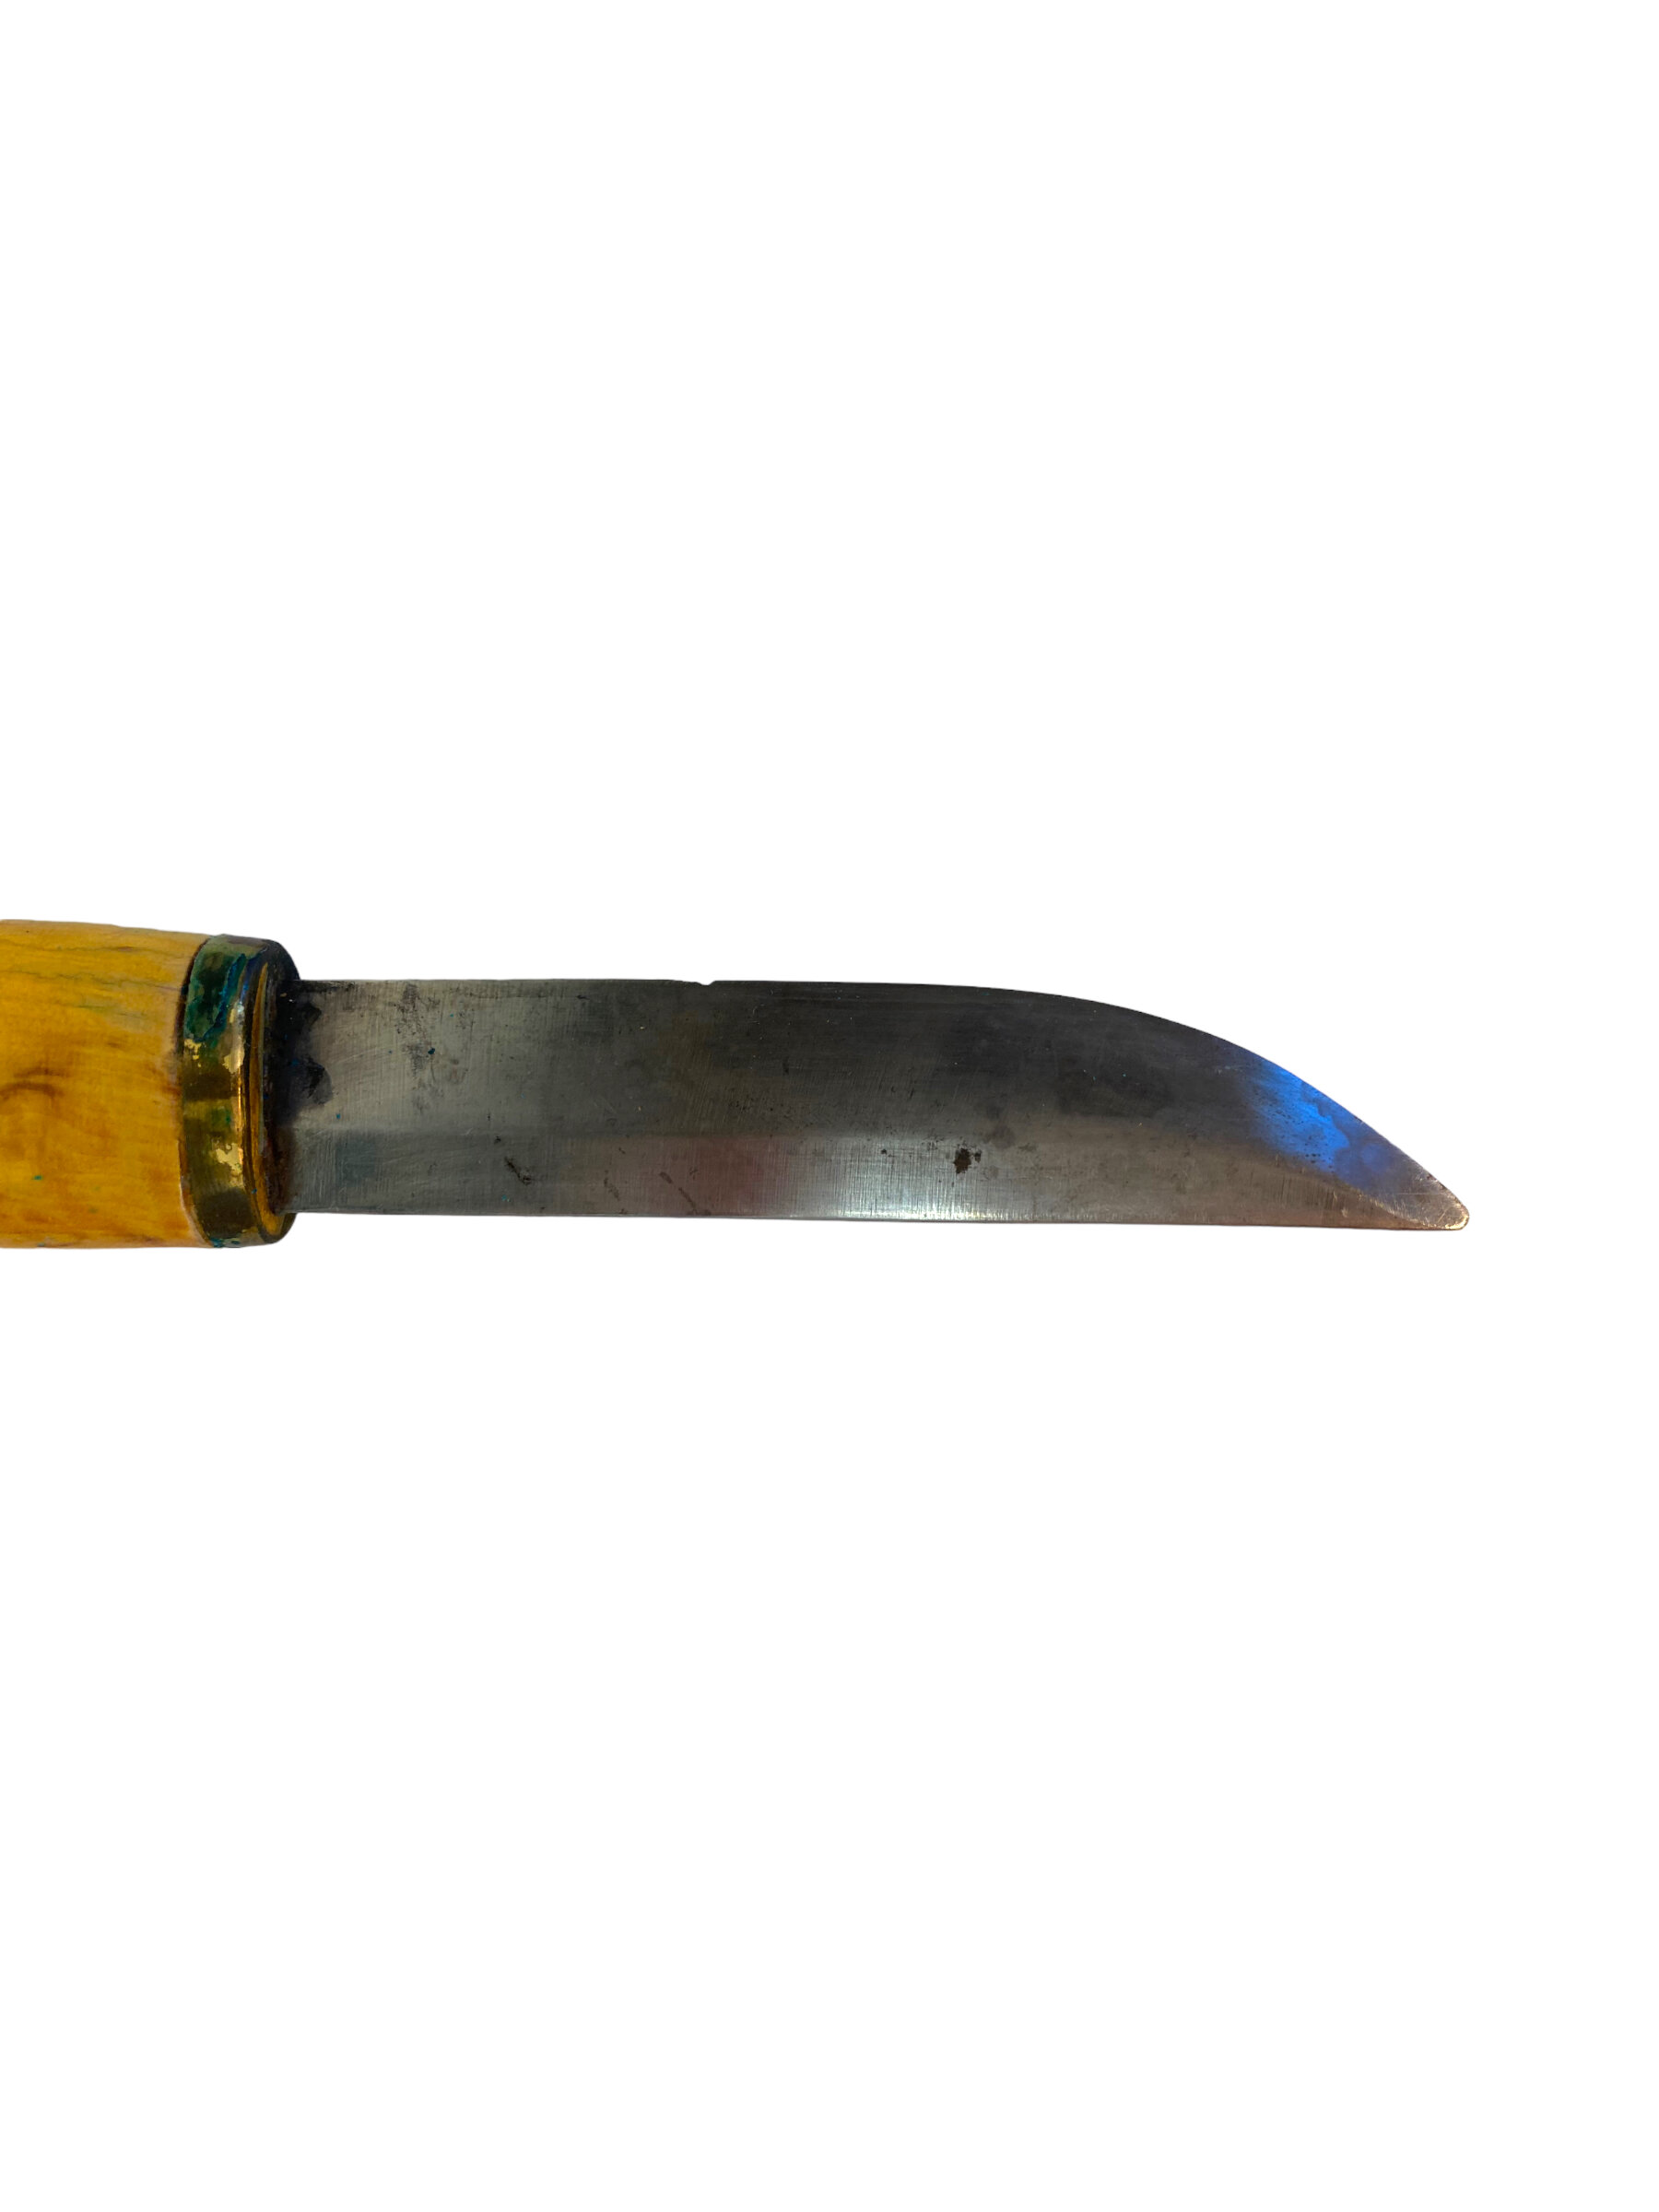 Knife - Iisakki Jarvenpaa Oy 2 Piece Horsehead Puukko Knife Set – Sold  Outright